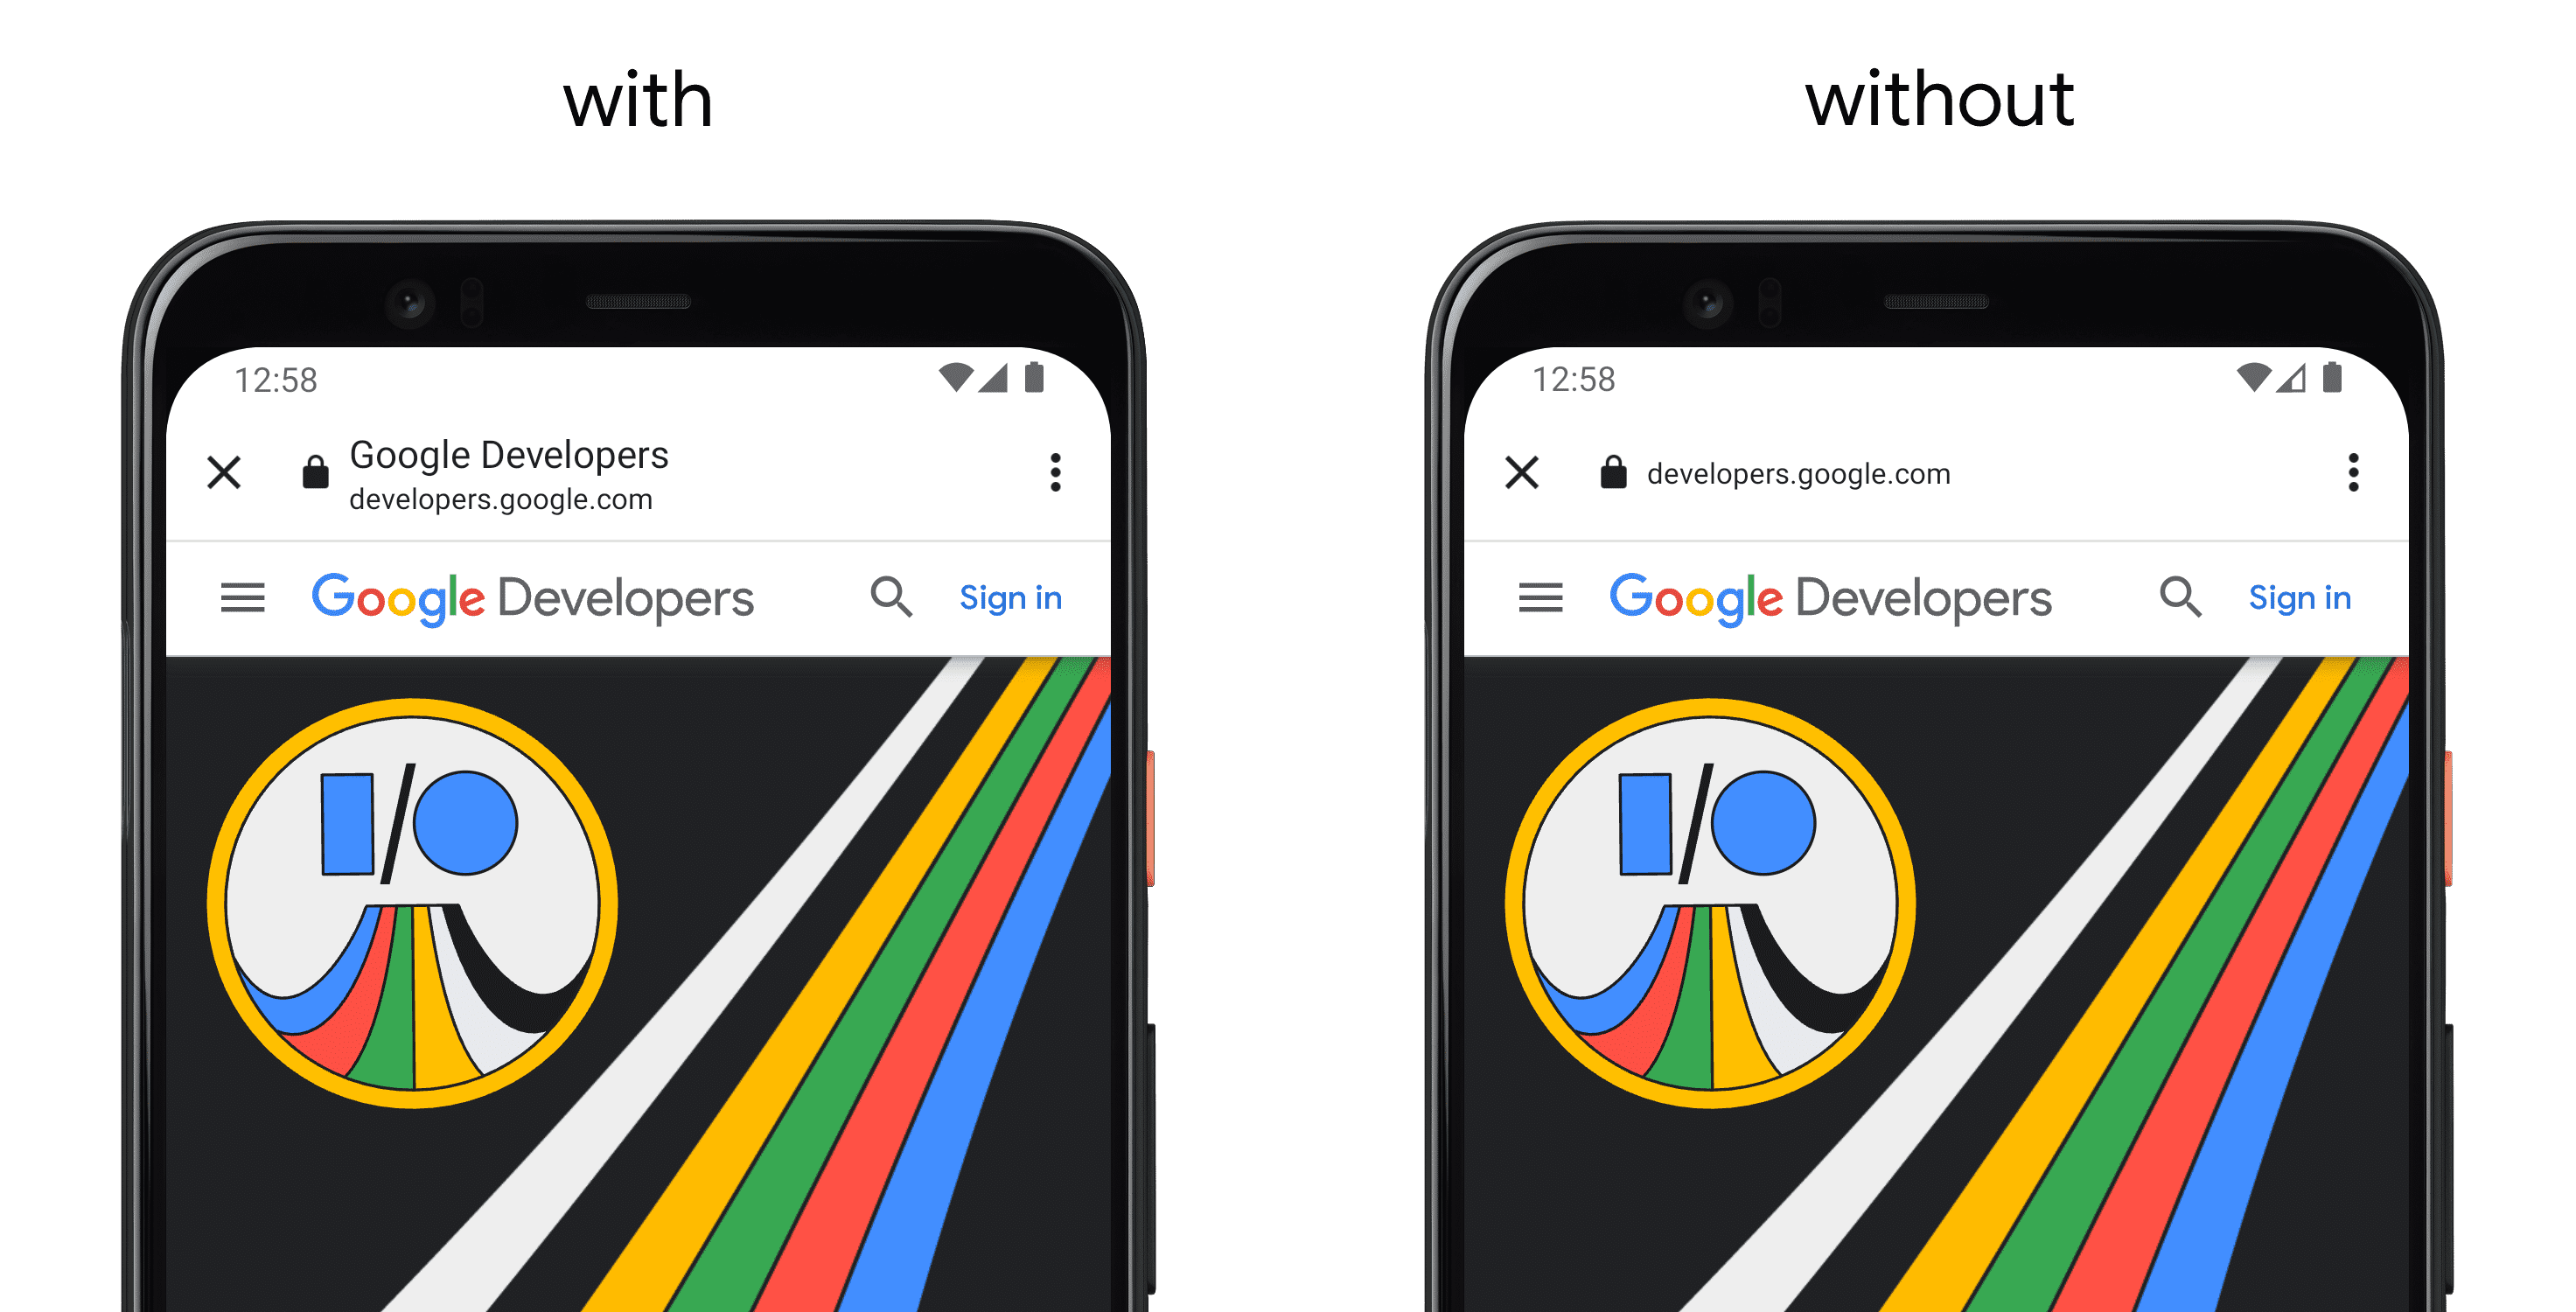 Links ein Smartphone, auf dem eine App mit „setShowTitle()“ angezeigt wird, und auf der rechten ein separates Smartphone ohne API